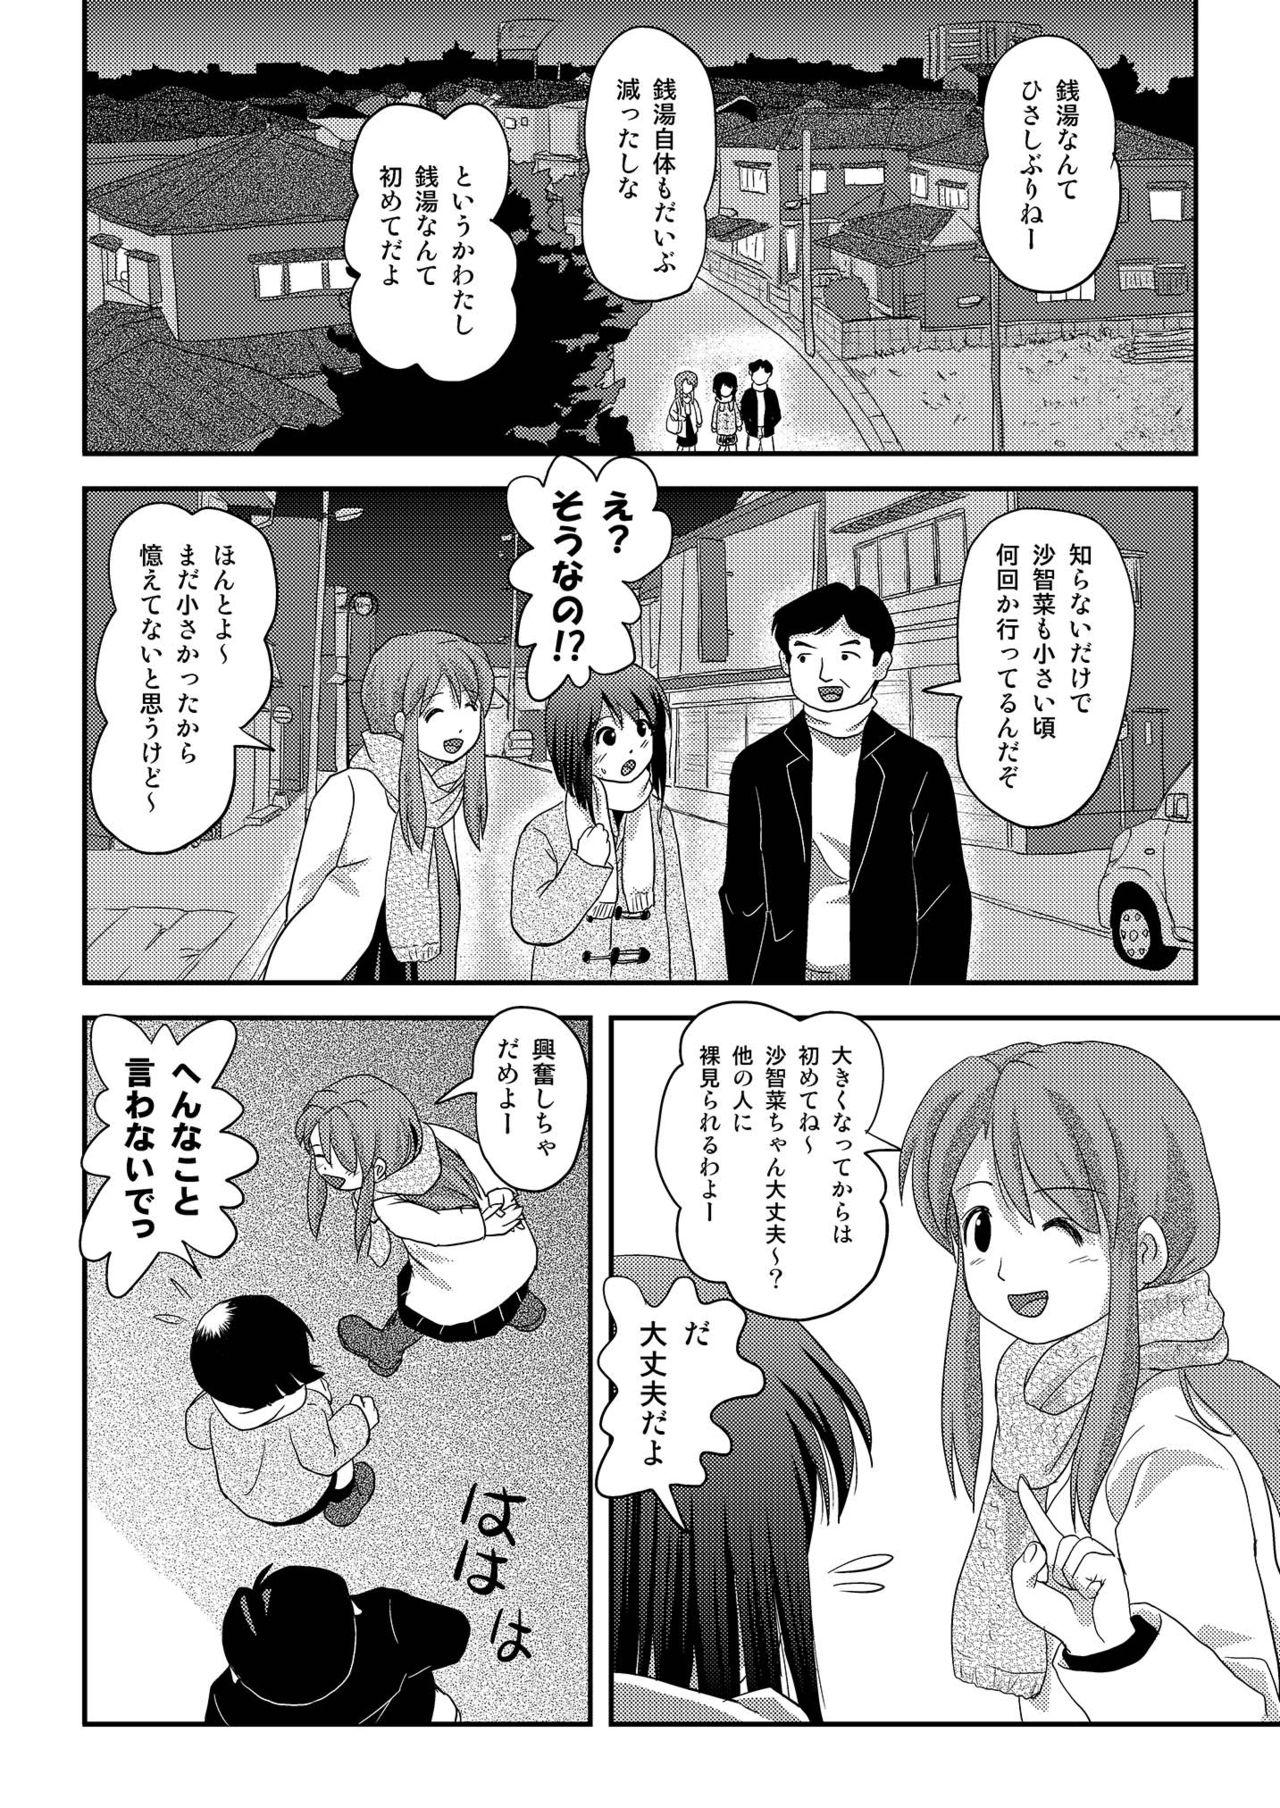 Asslicking Sachina no Roshutsu Nikki 3 - Original Village - Page 4